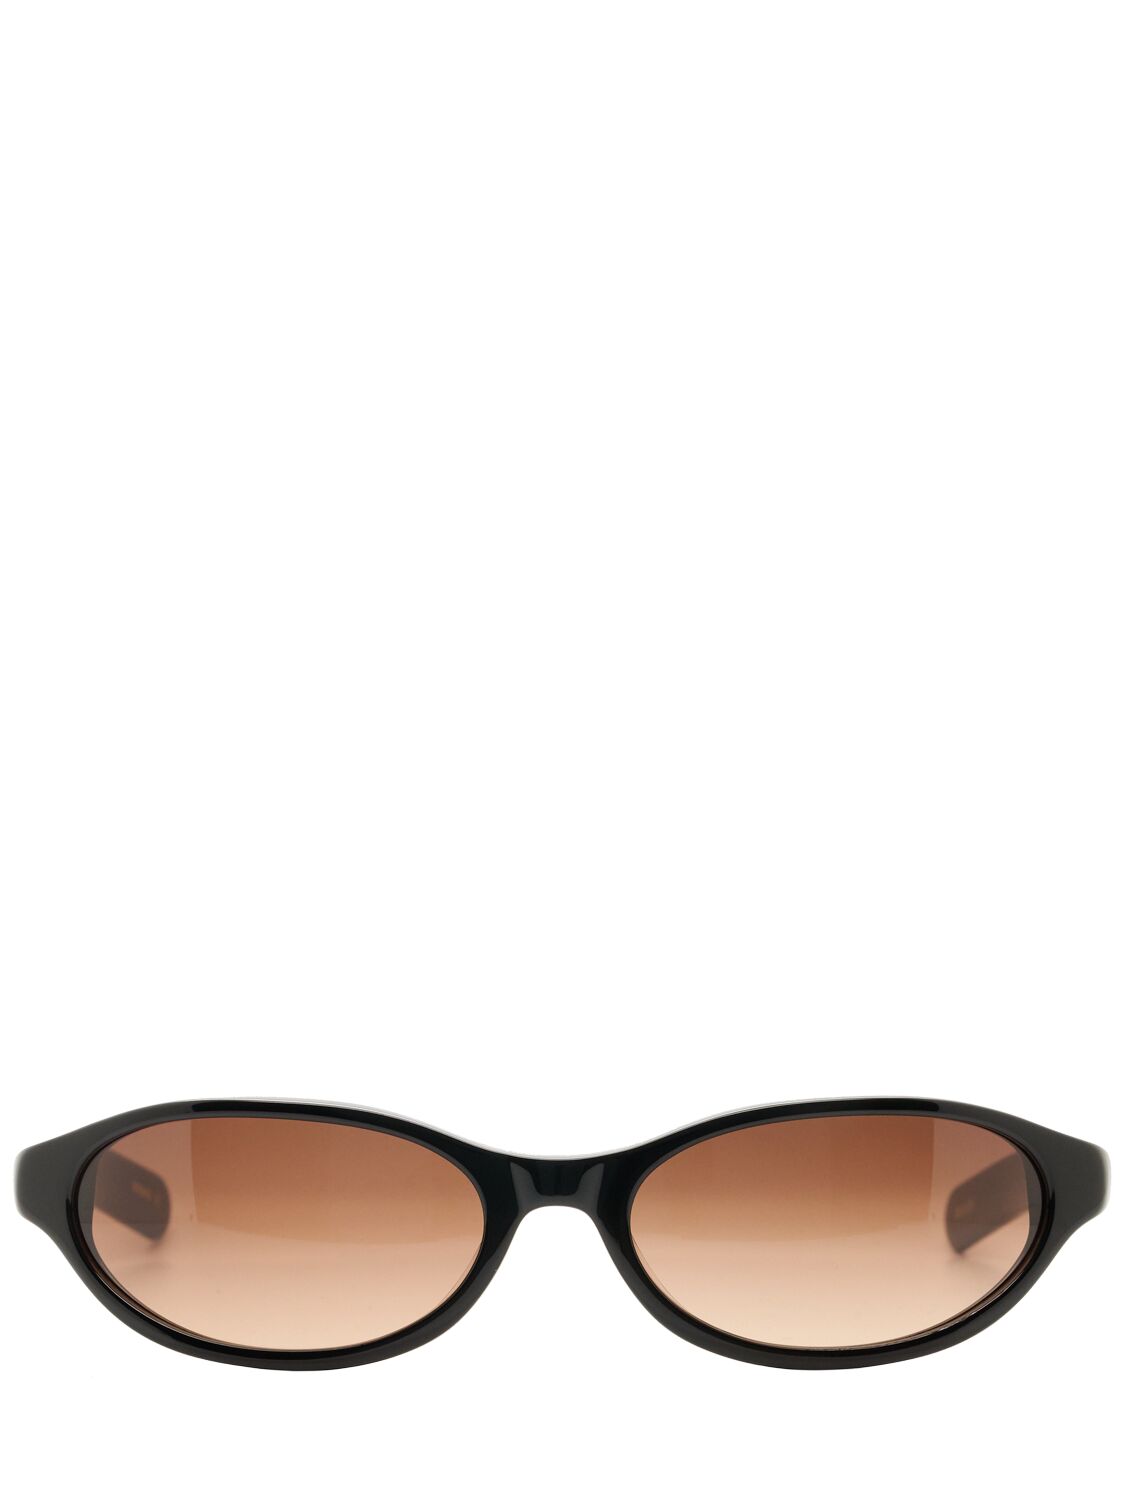 Flatlist Eyewear Olympia Acetate Sunglasses W/ Brown Lens In Black/brown